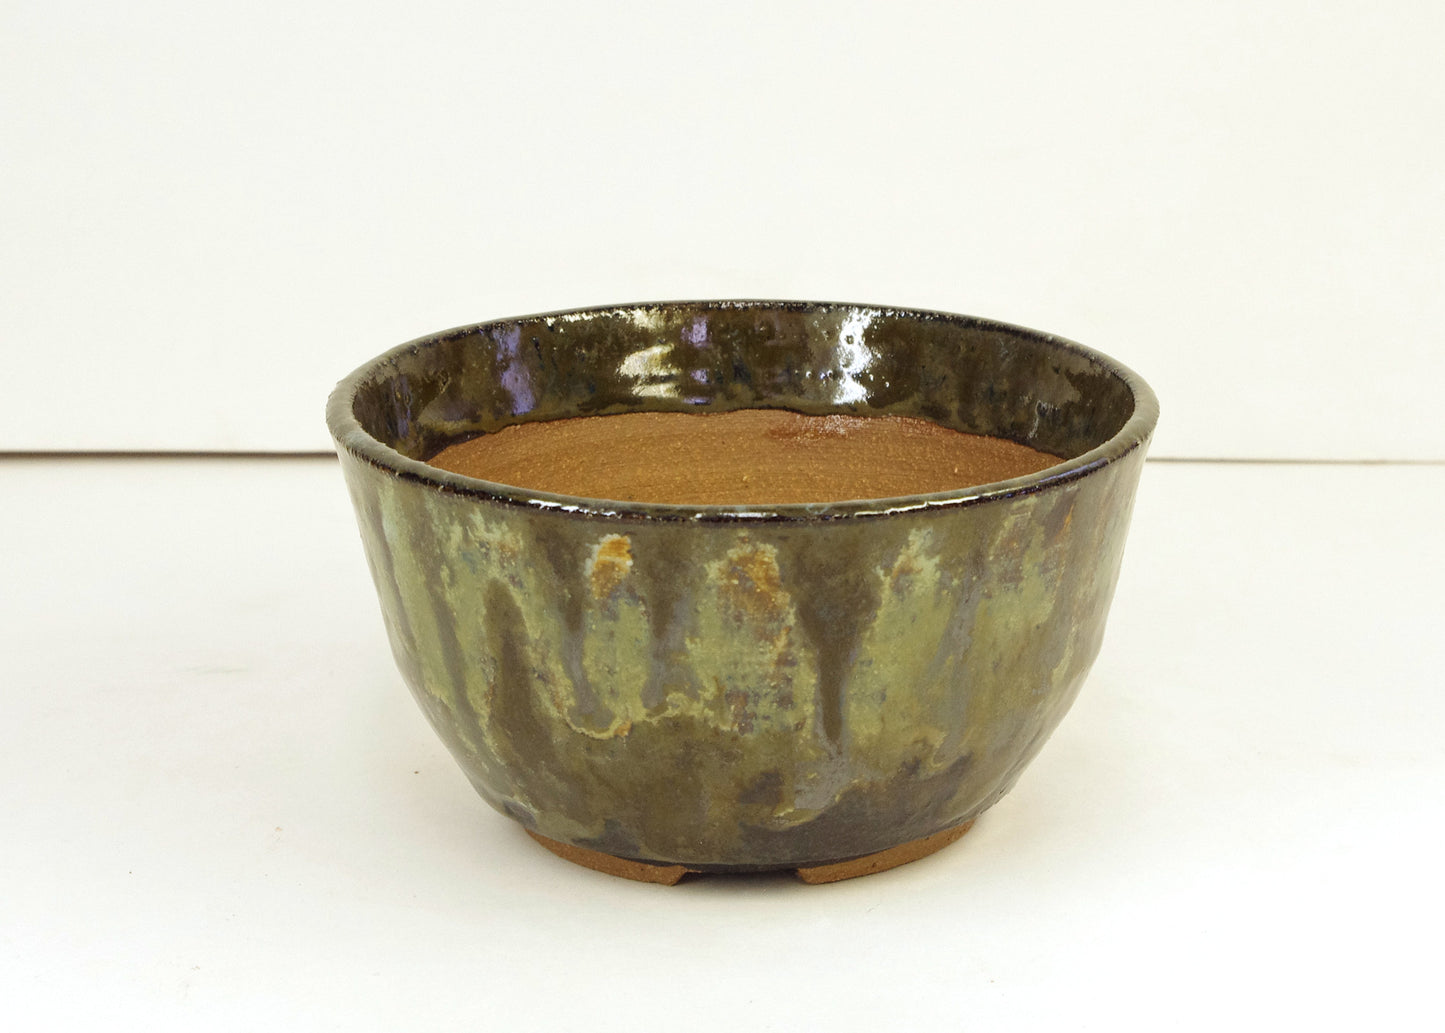 2133 Hand Thrown Bonsai Pot, Stoneware, Greens, Browns, 4 1/2 x 2 3/8